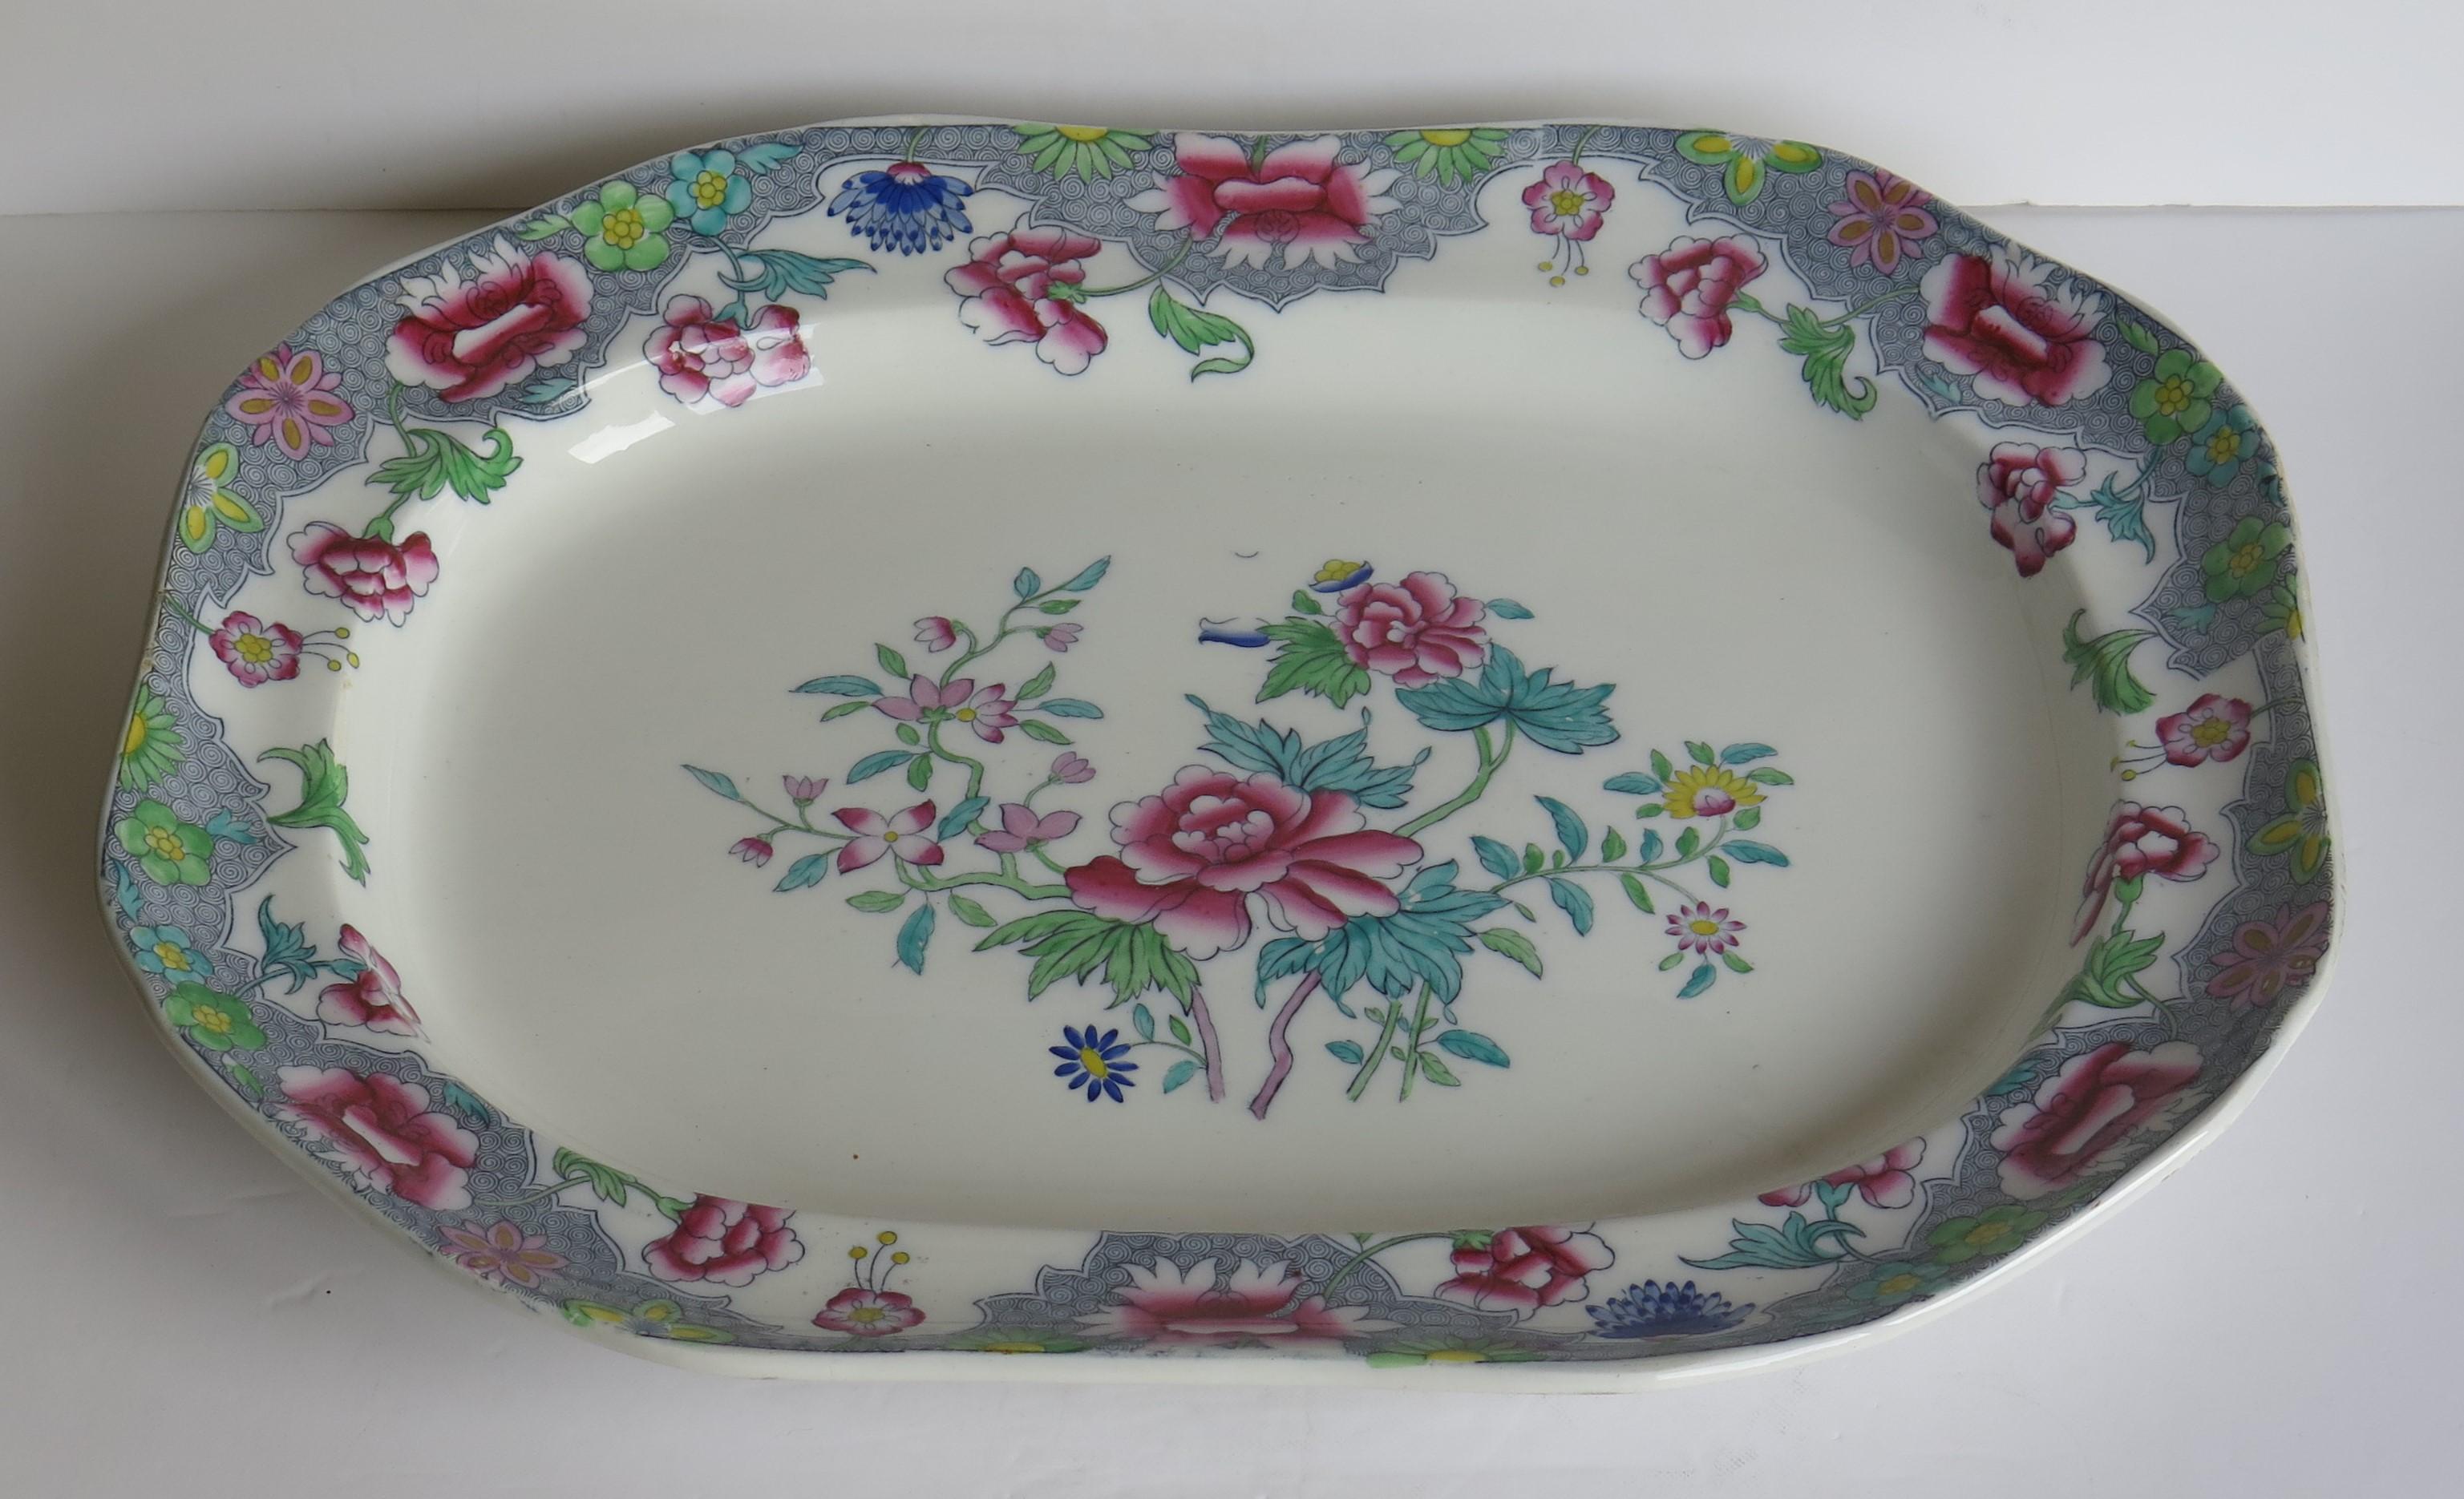 Dies ist eine schöne große Platte oder Fleischteller von Copeland (früher Spode) in einem sehr dekorativen floralen Muster Nr. 8036, England, aus der Zeit um 1850.

Das Stück ist als großer rechteckiger Teller oder Platte mit abgeschrägten Ecken